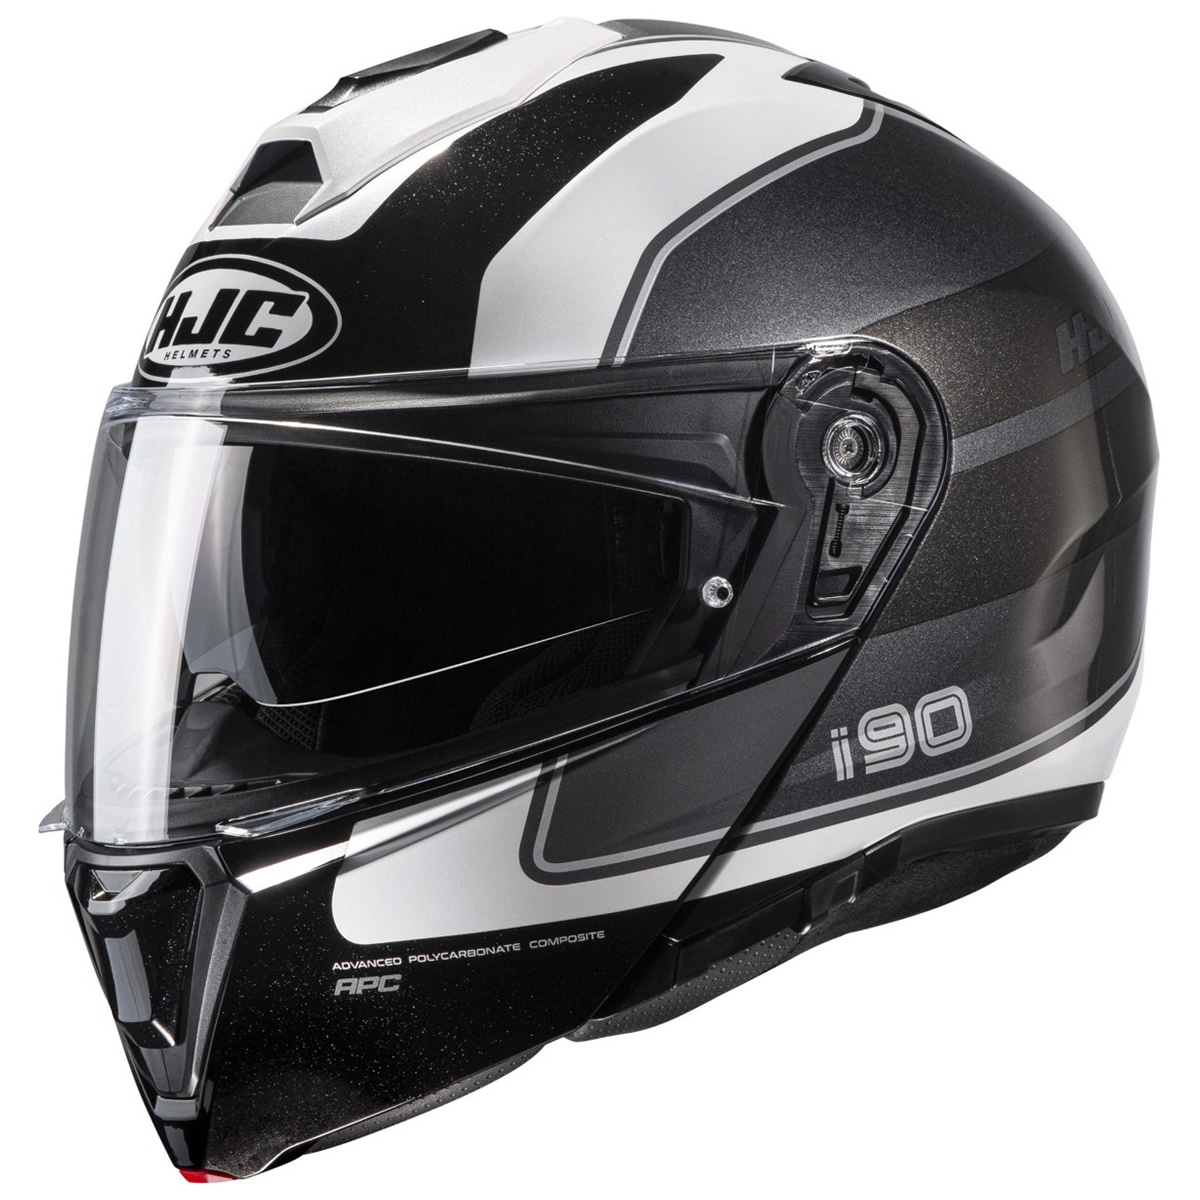 HJC Helm i90 Wasco MC5, schwarz-weiß